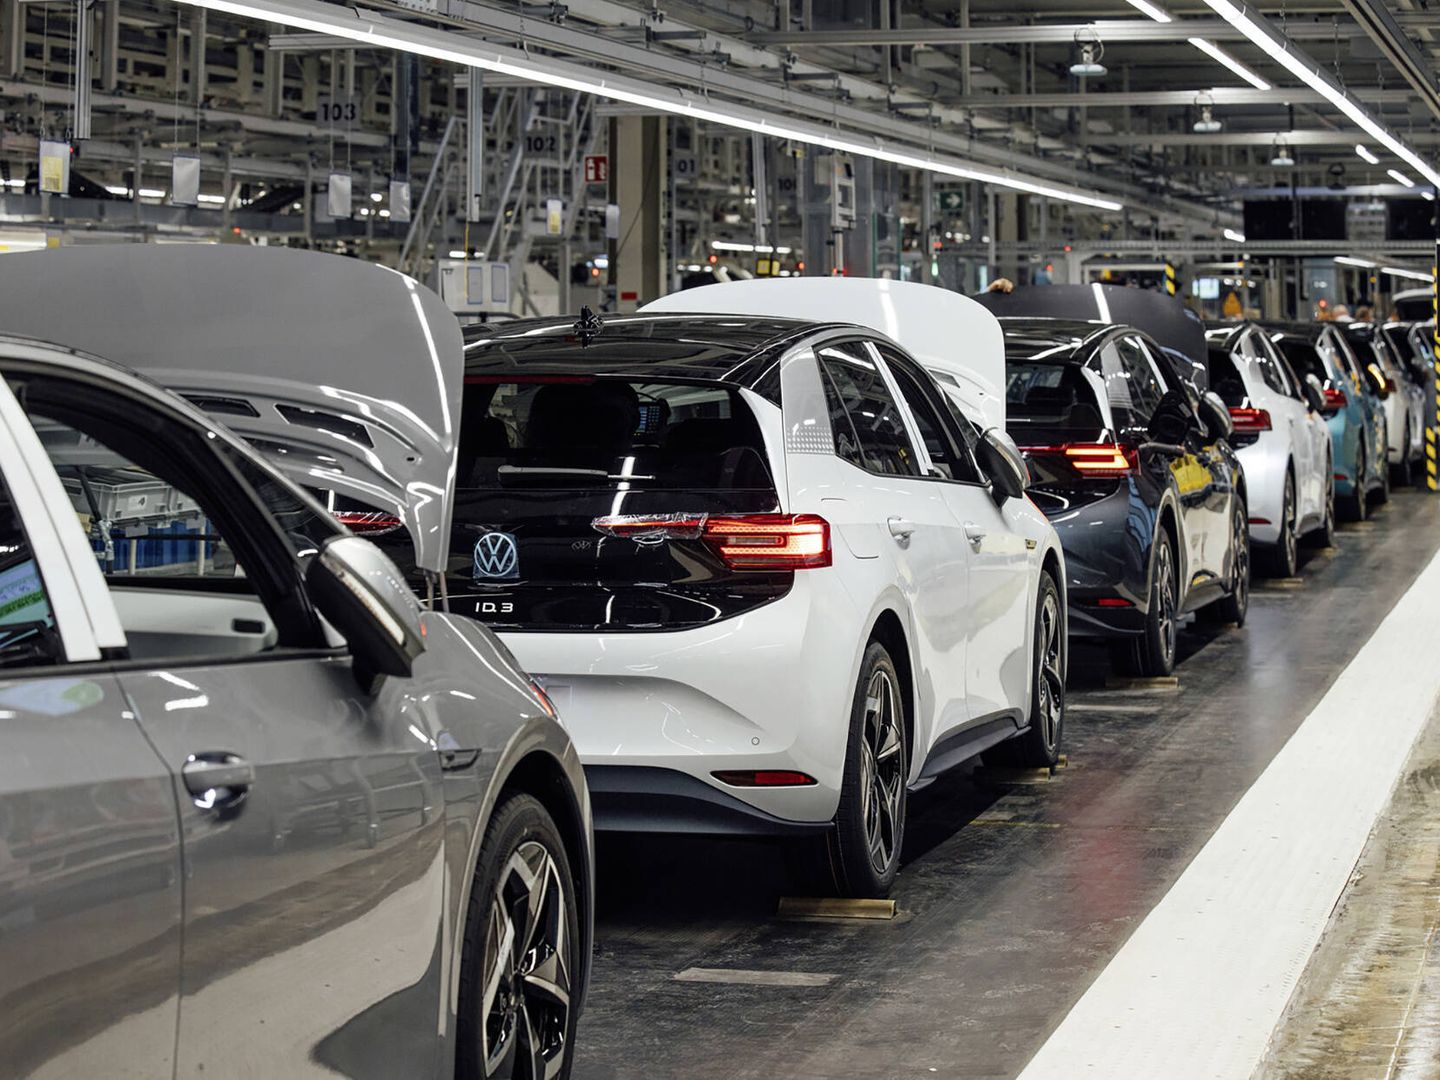 La marca Volkswagen vendió 1.080.000 unidades en Europa el año pasado.